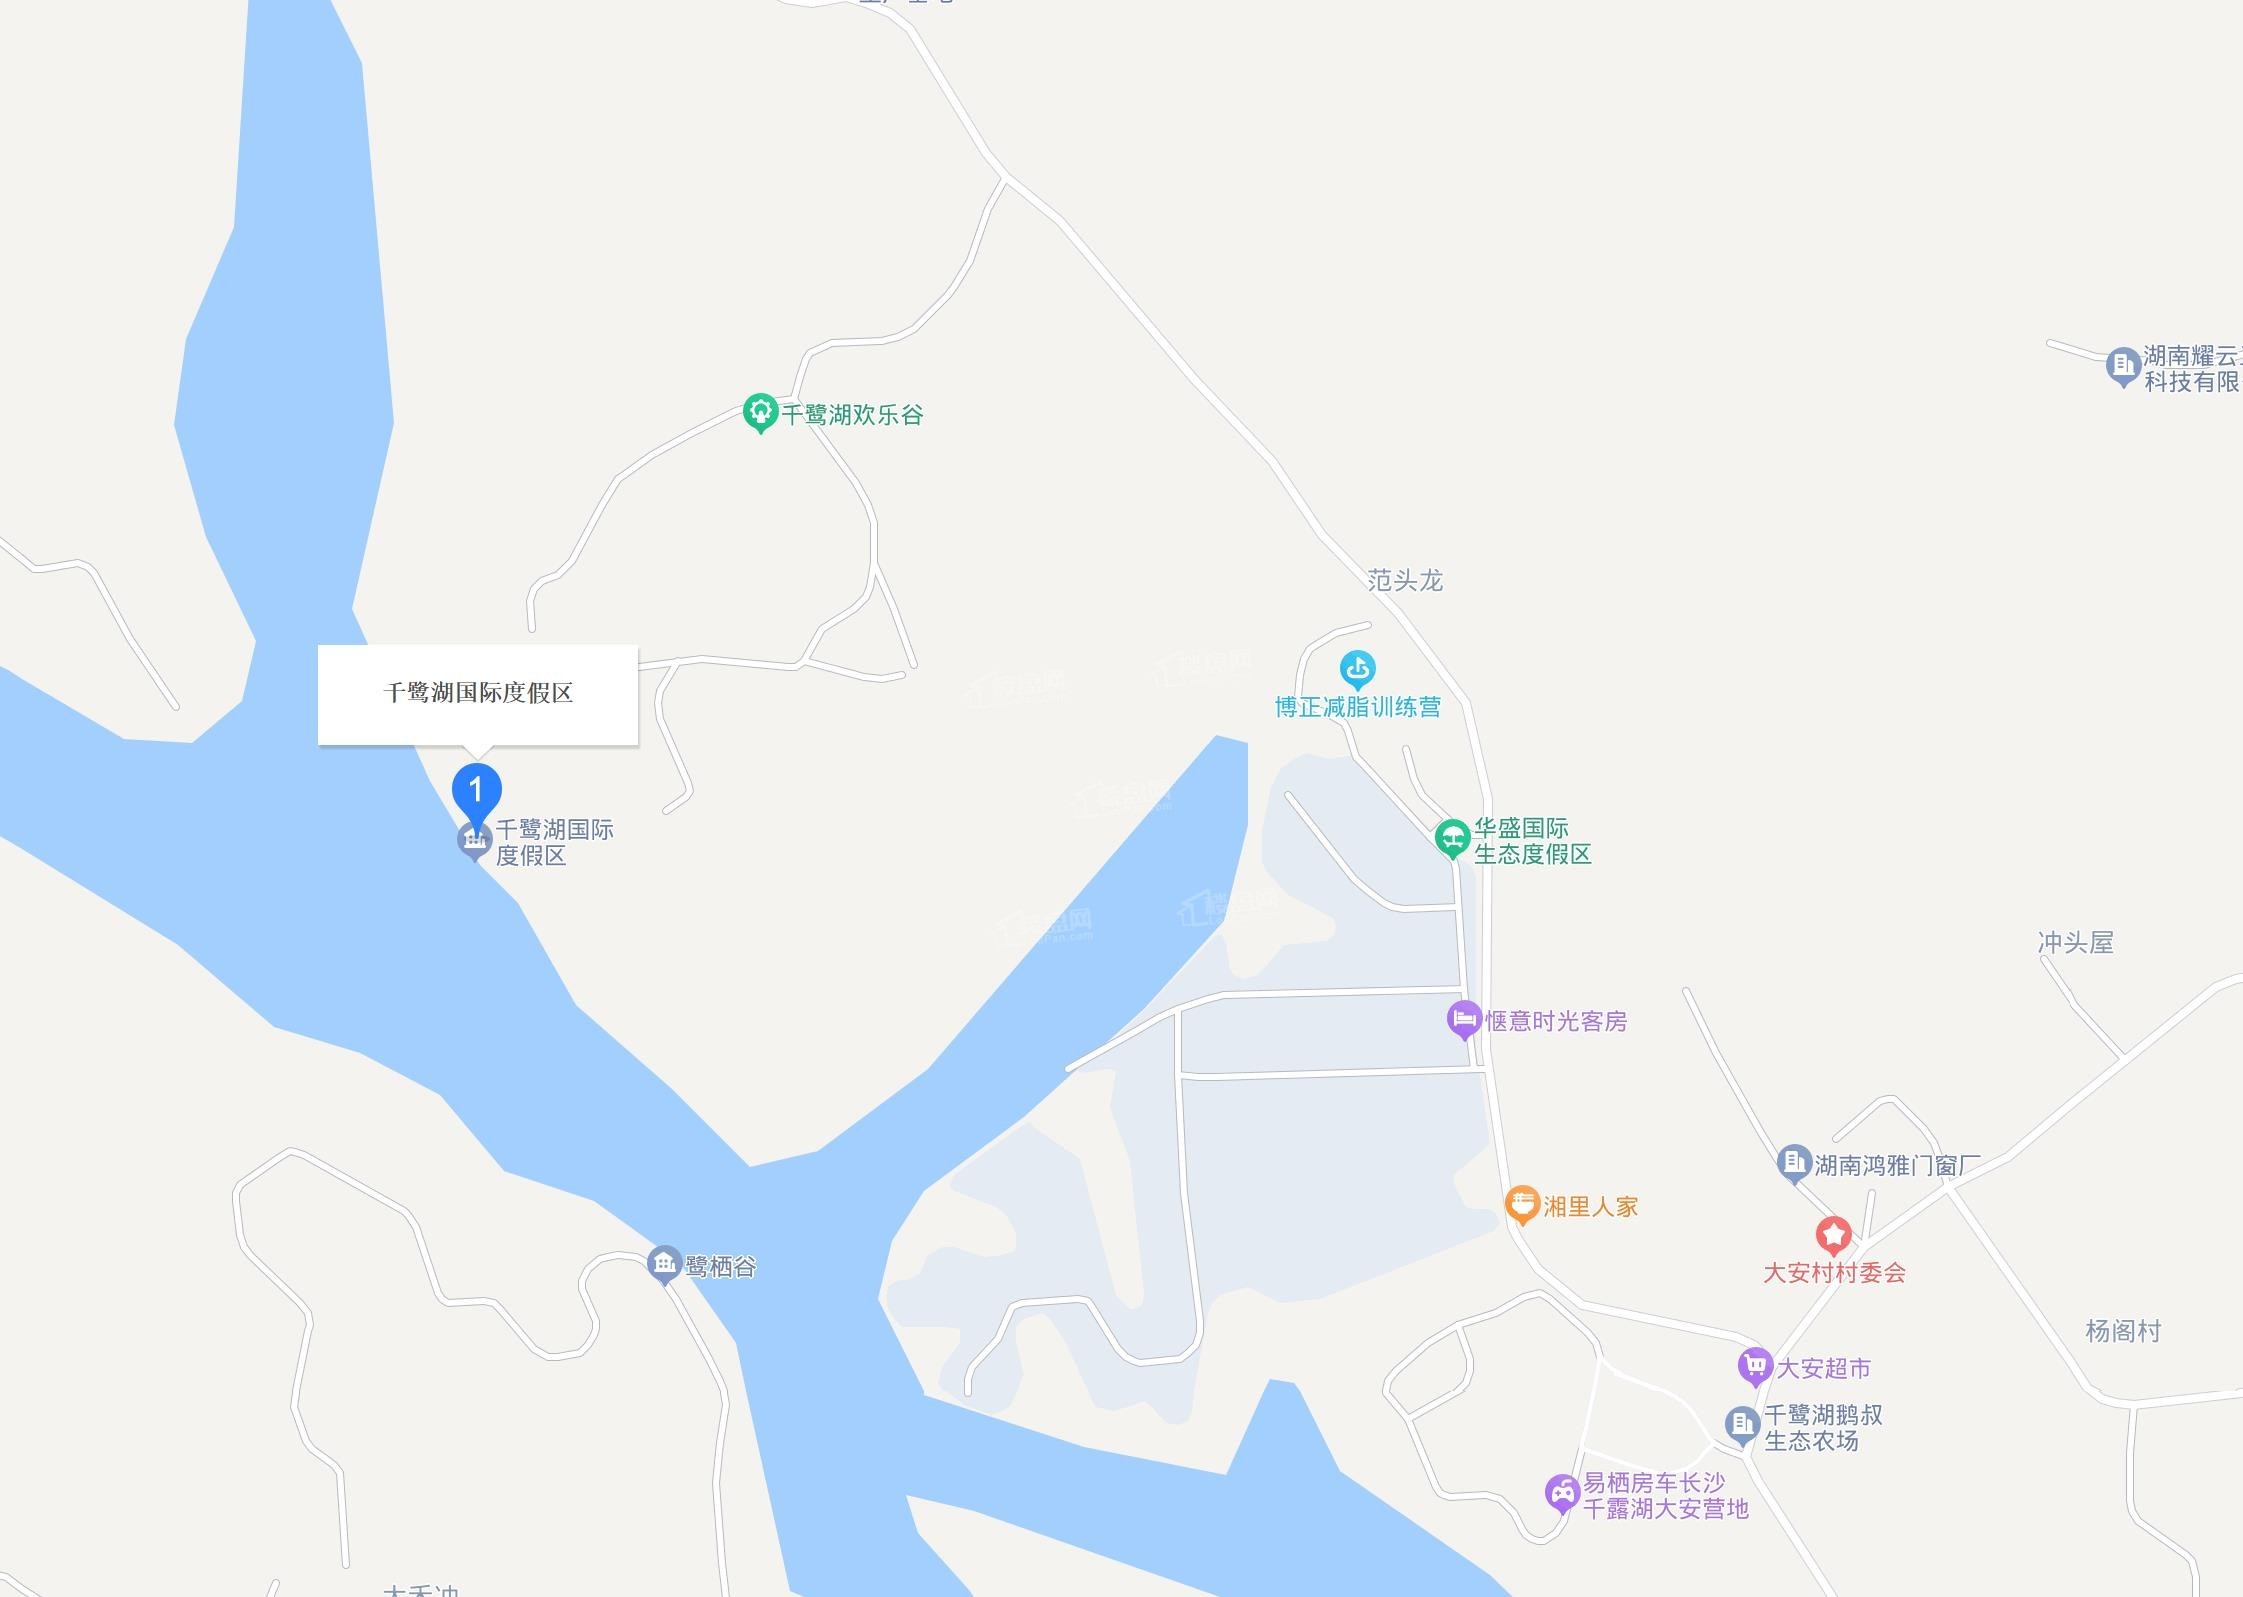 千鹭湖国际度假区位置图